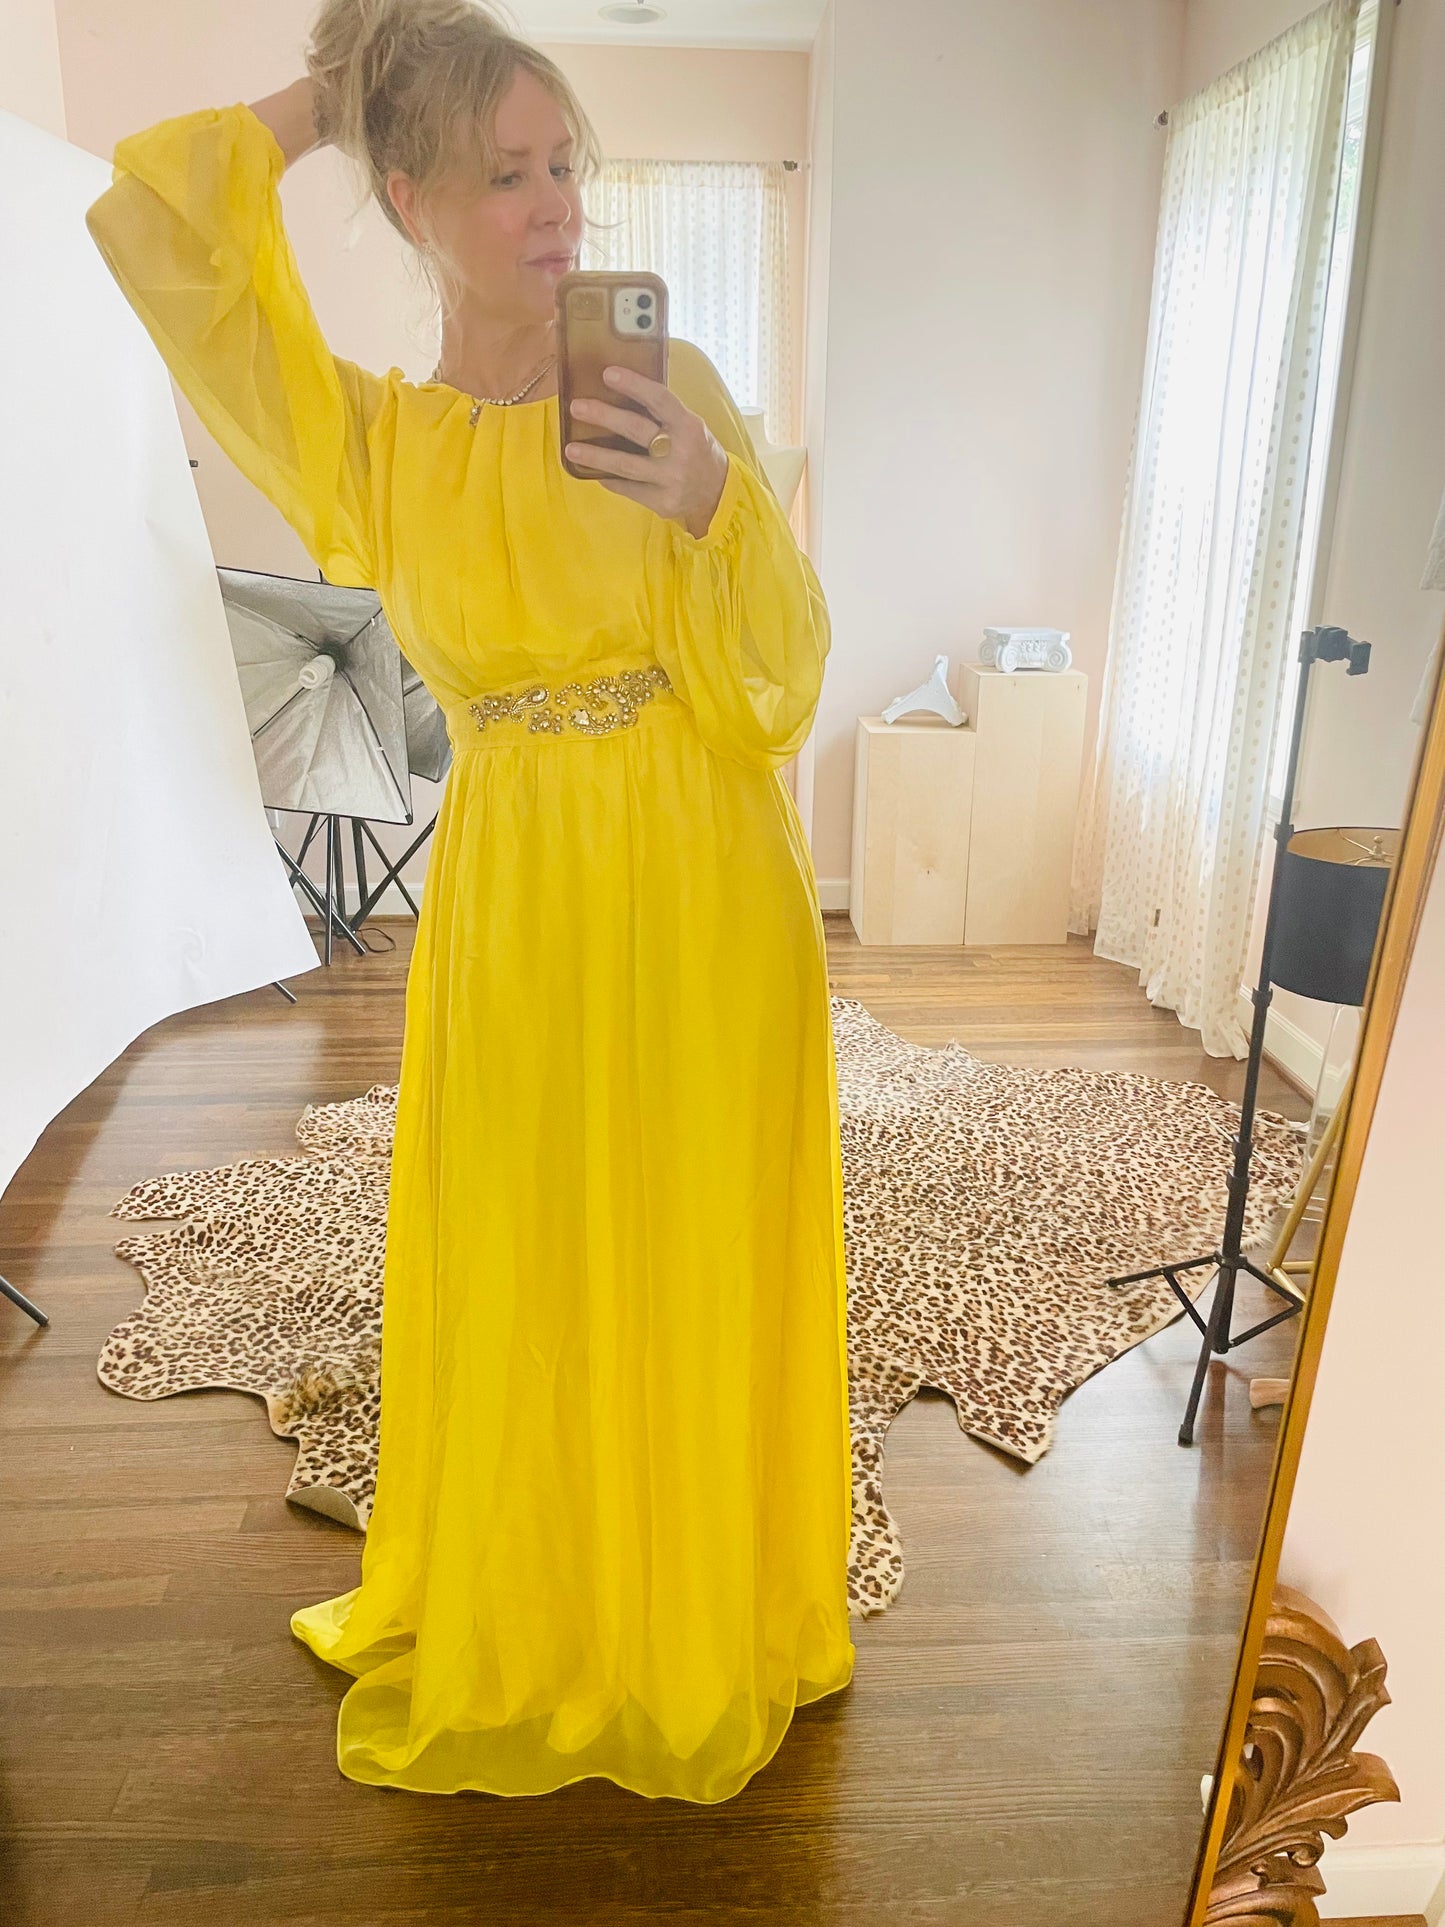 Pinko Yellow Dress